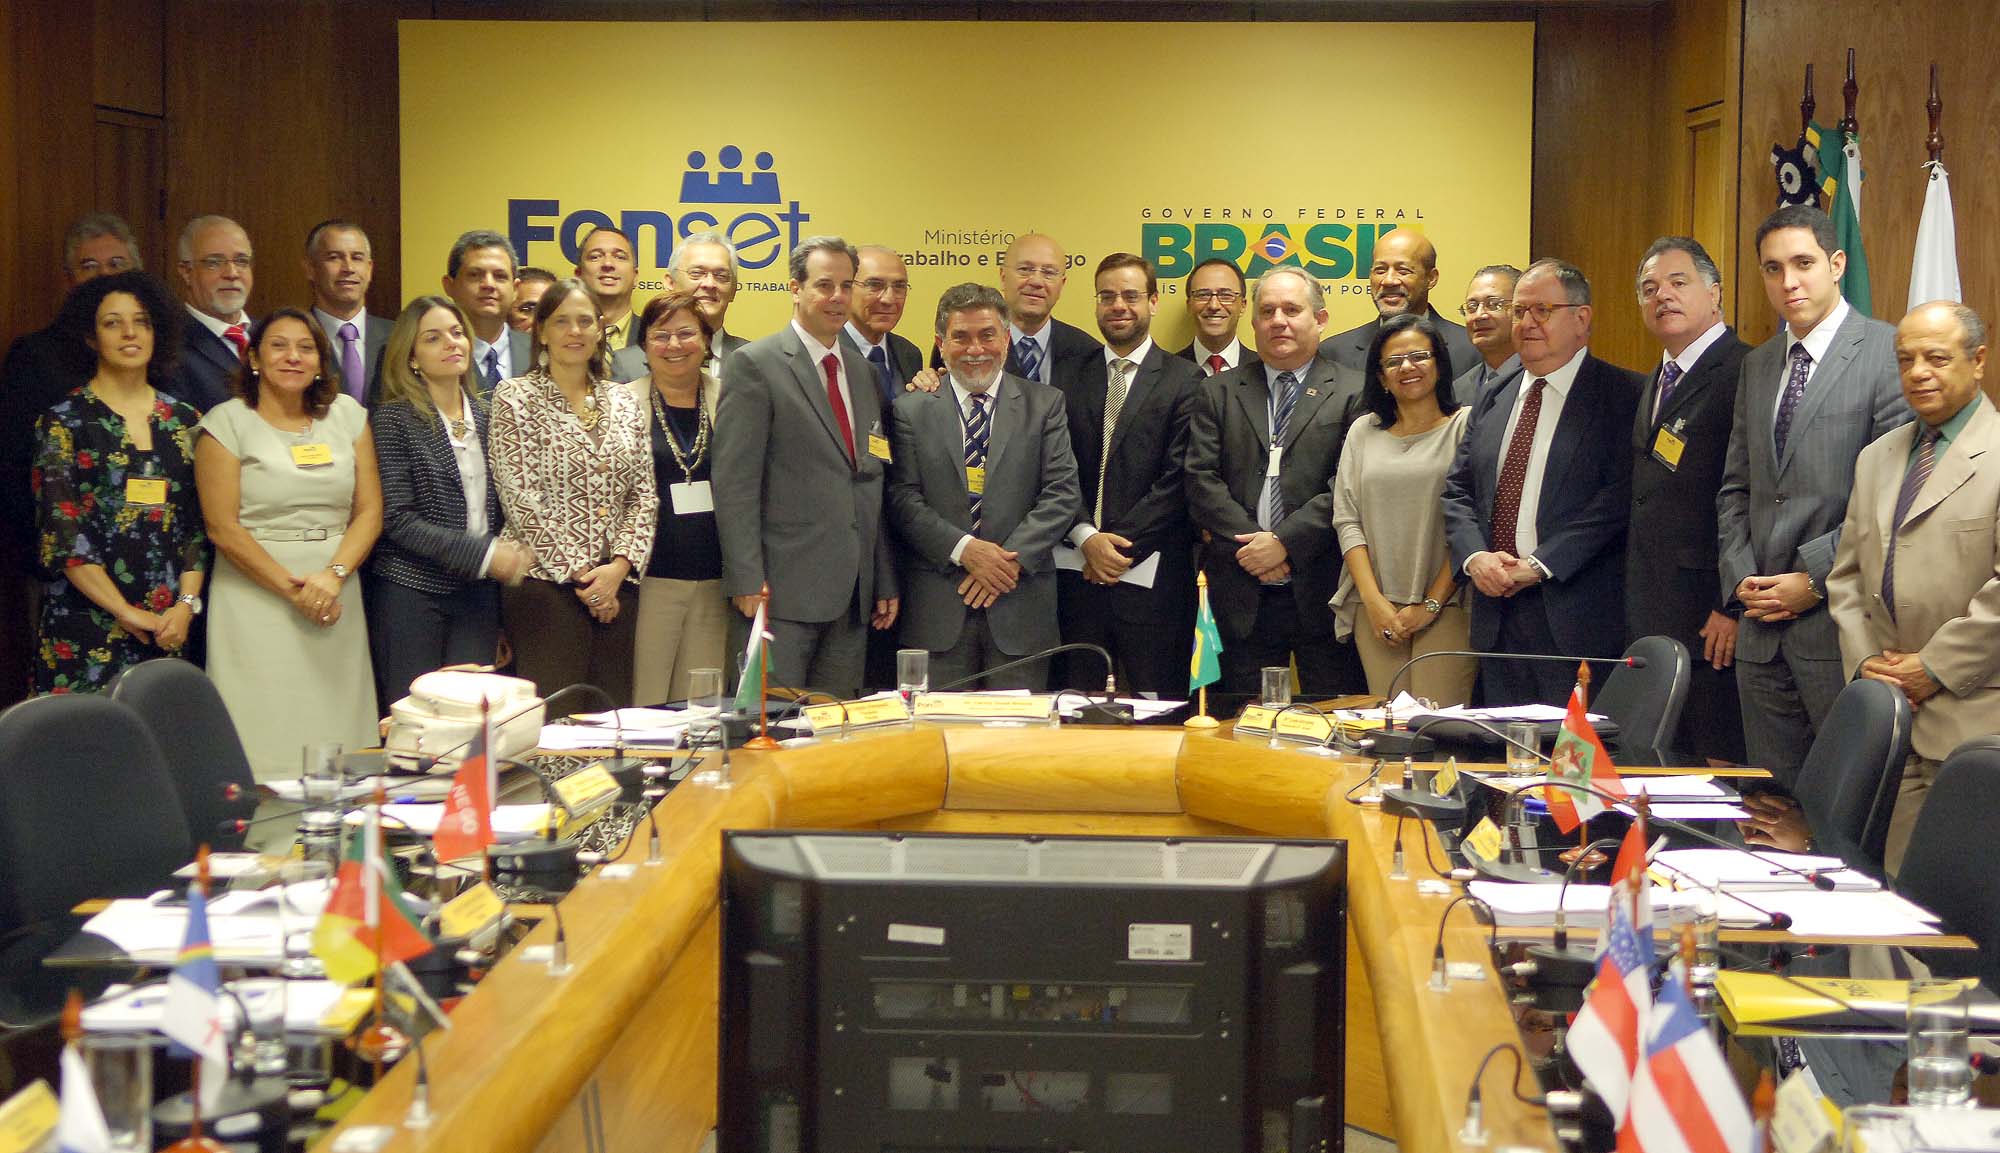 Ministro Brizola Neto durante foto oficial da abertura da 87ª reunião do Fonset ao lado dos secretários de estado do trabalho.